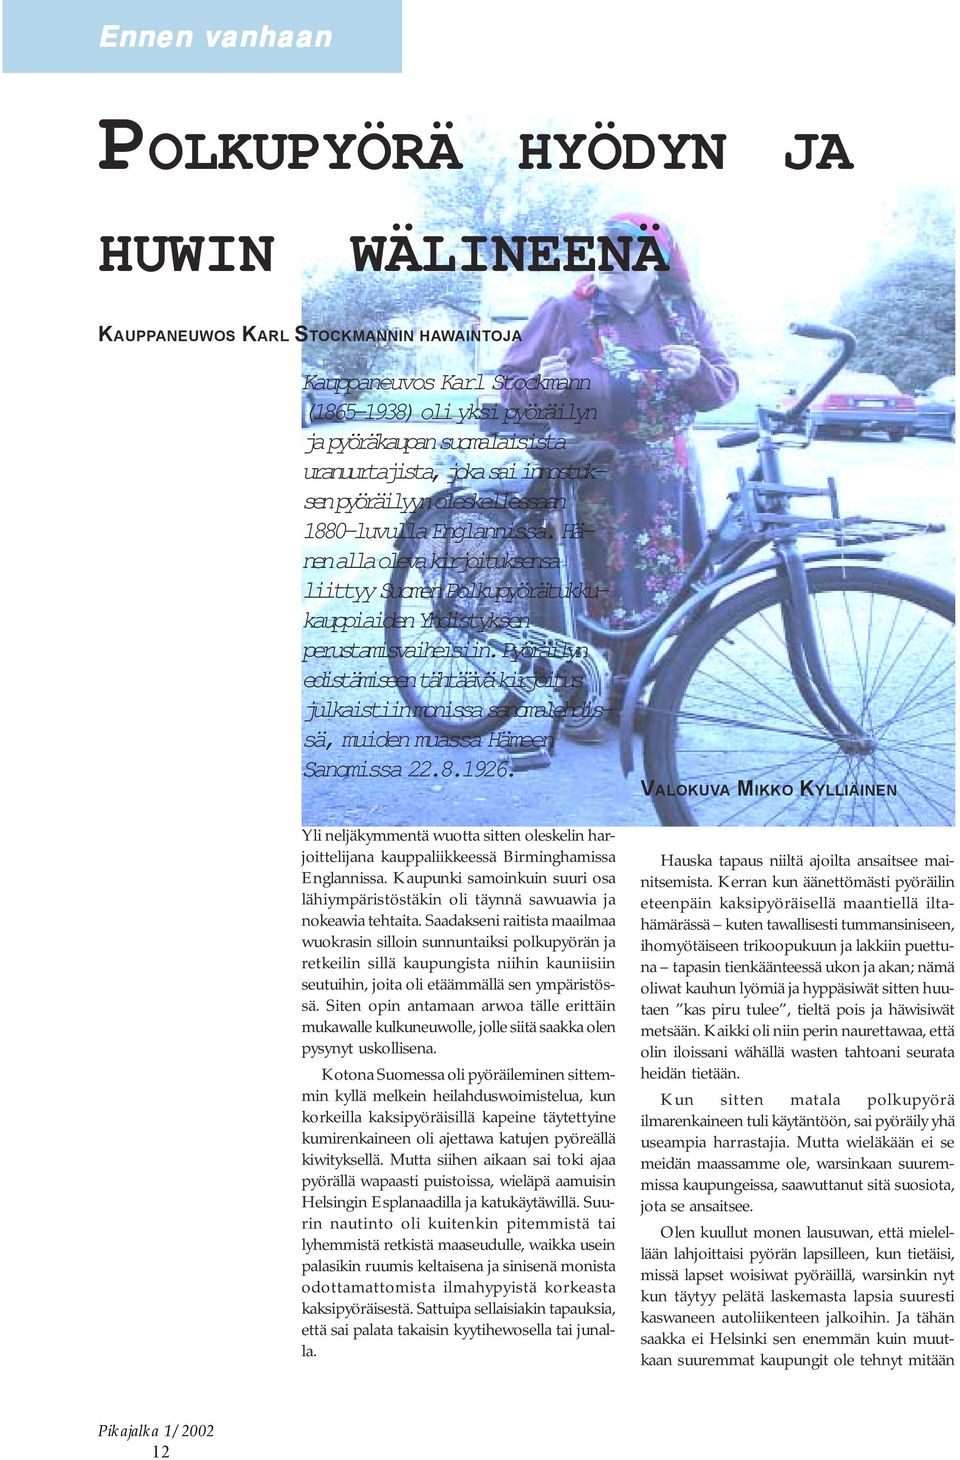 Pyöräilyn edistämiseen tähtäävä kirjoitus julkaistiin monissa sanomalehdissä, muiden muassa Hämeen Sanomissa 22.8.1926.